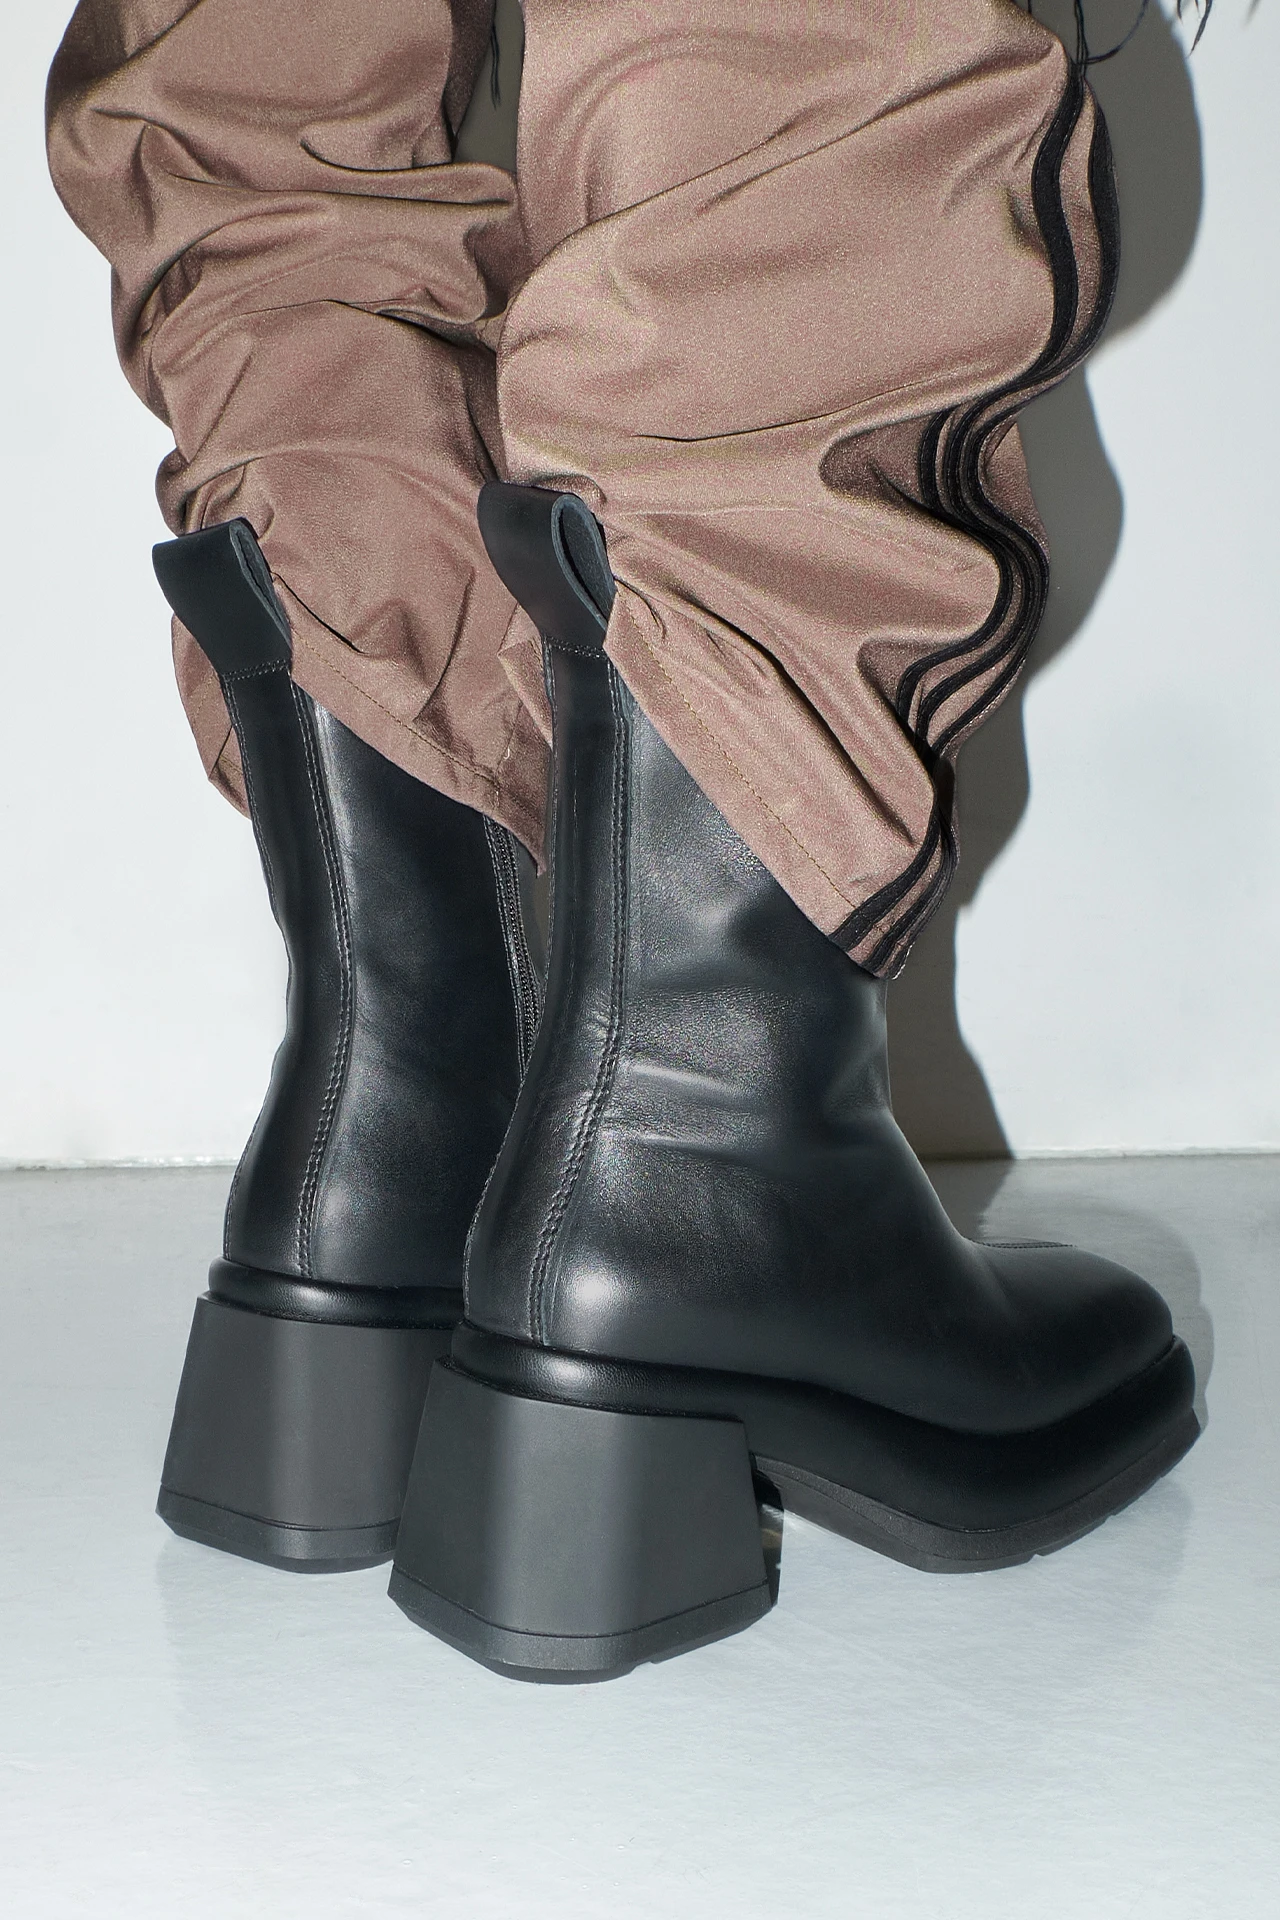 EC-E8-cassia-black-boots-04